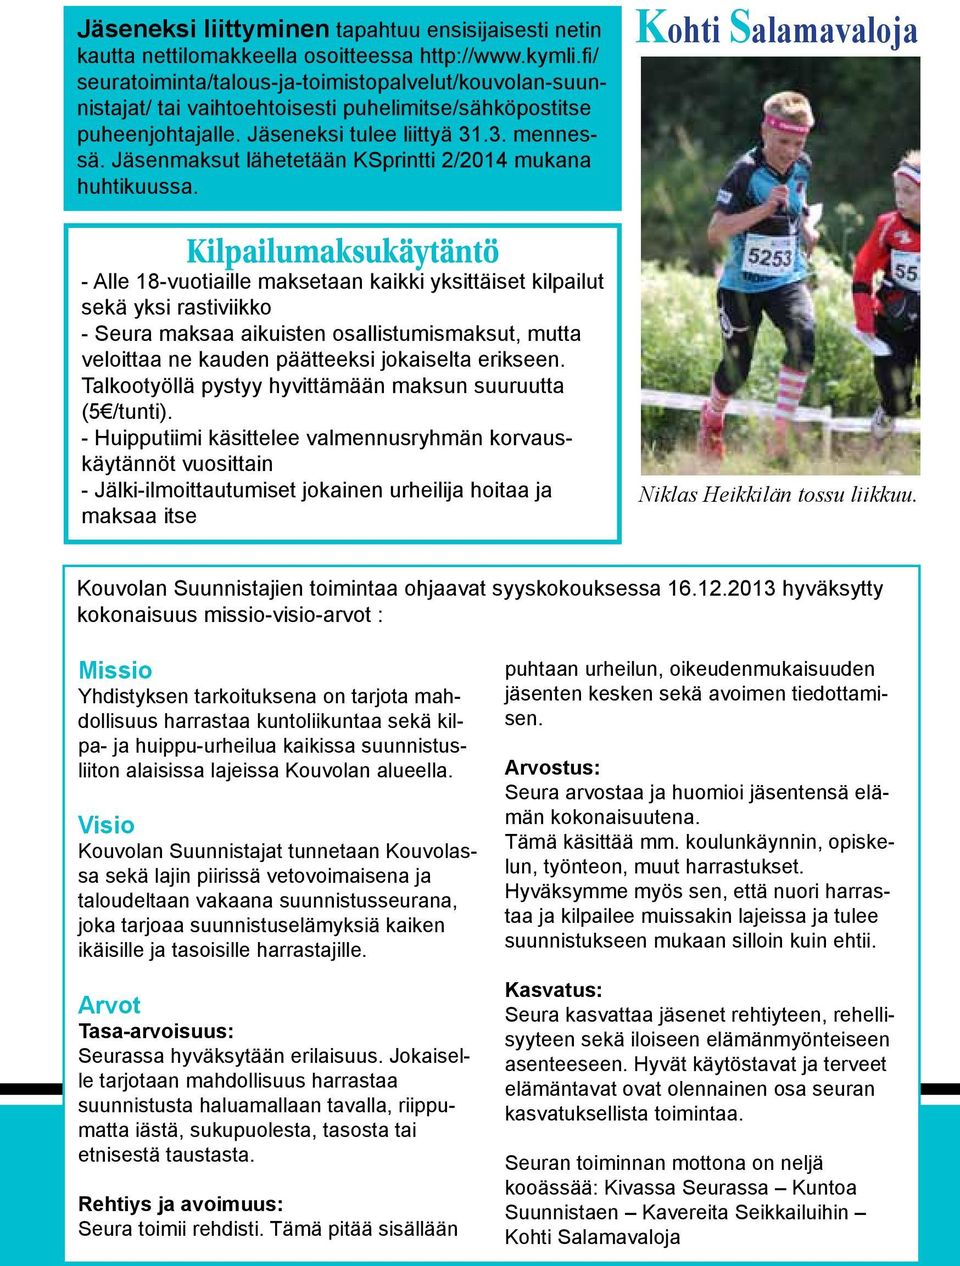 Jäsenmaksut lähetetään KSprintti 2/2014 mukana huhtikuussa.